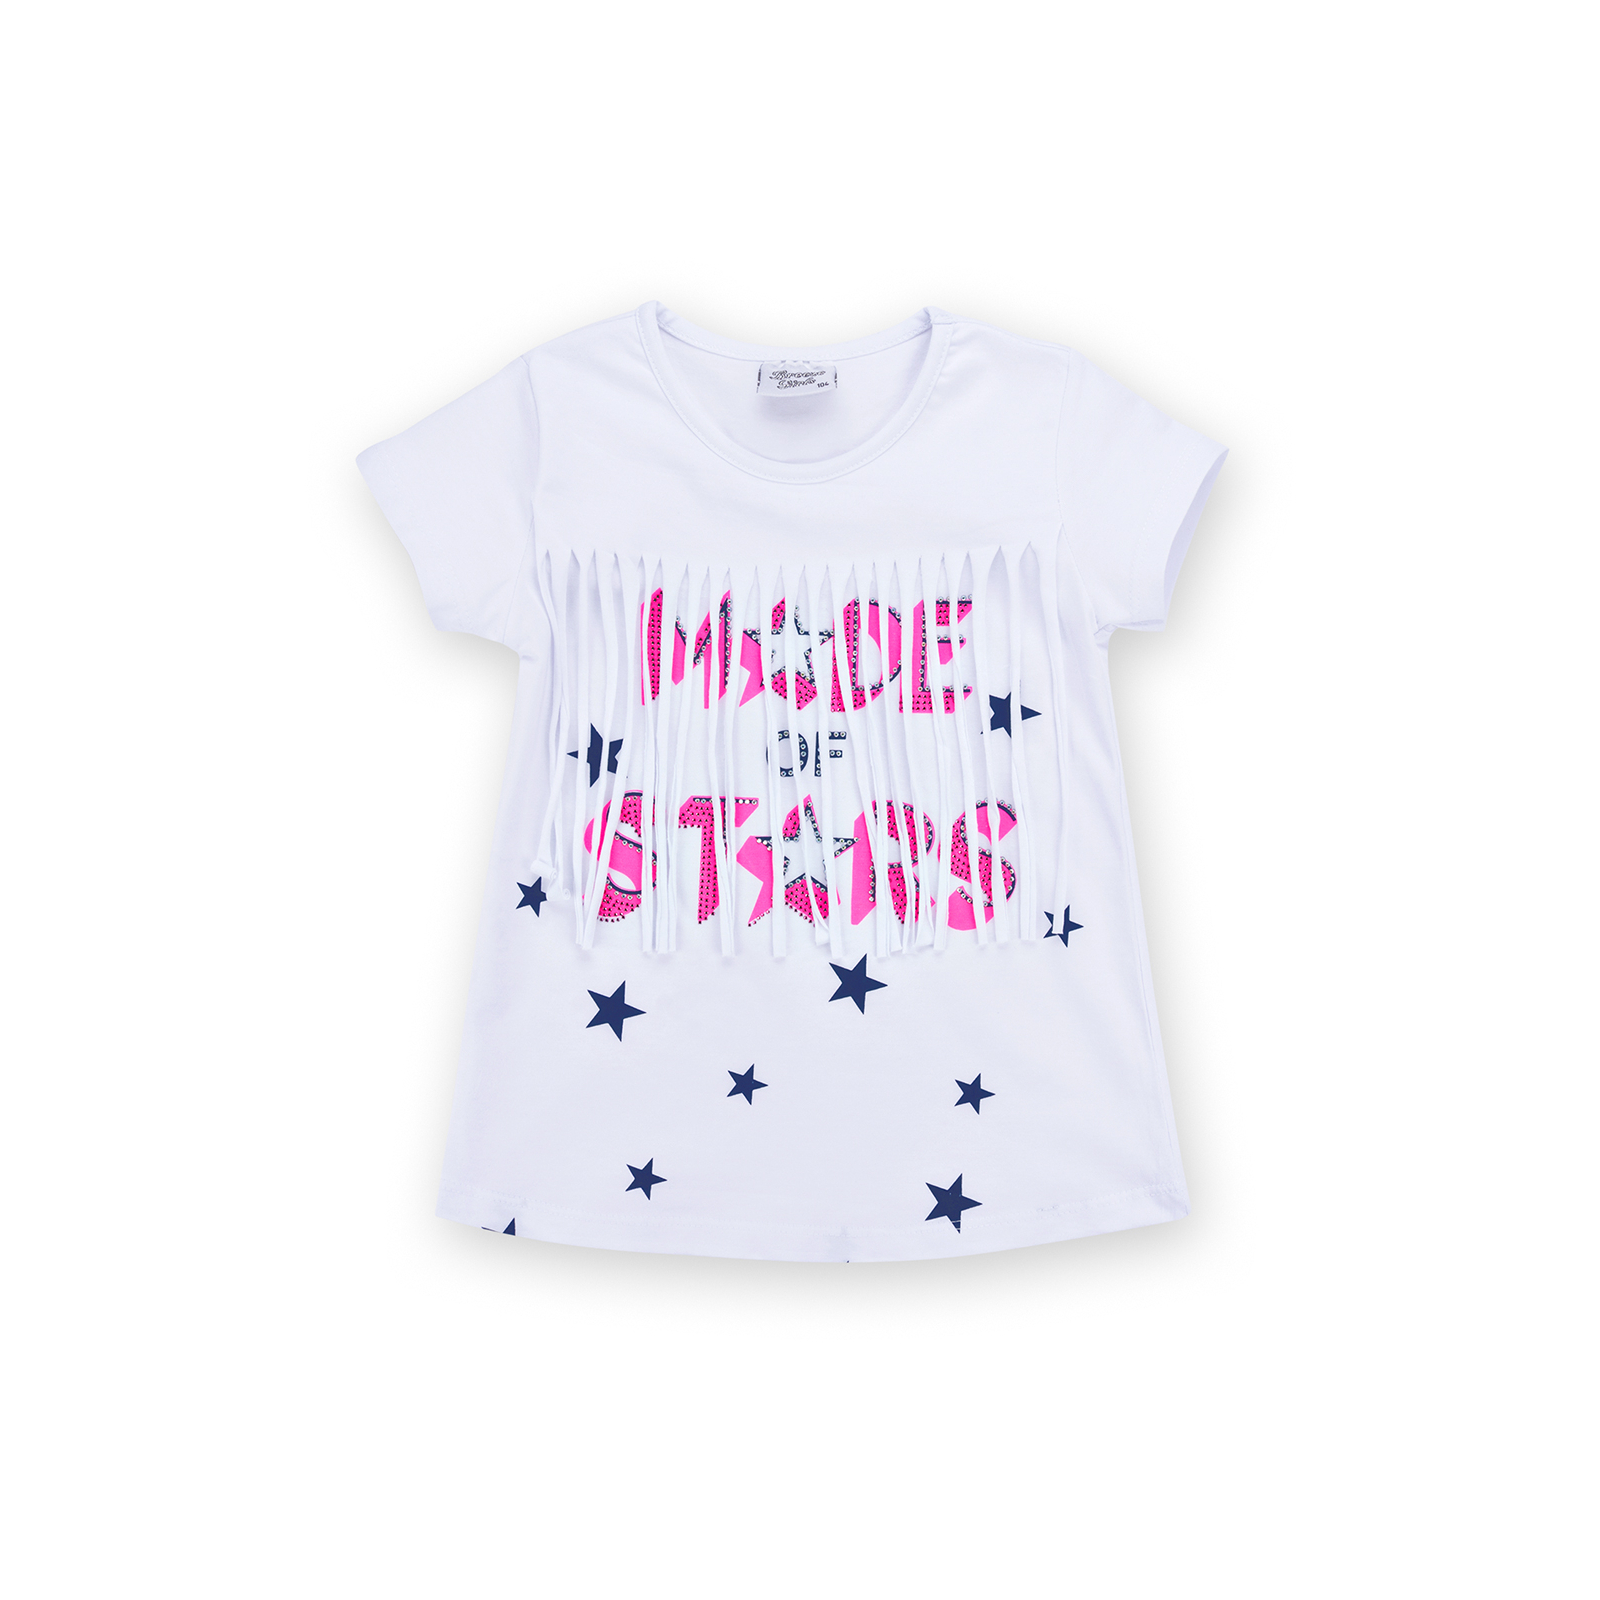 Набор детской одежды Breeze футболка со звездочками с шортами (9036-104G-pink) изображение 2